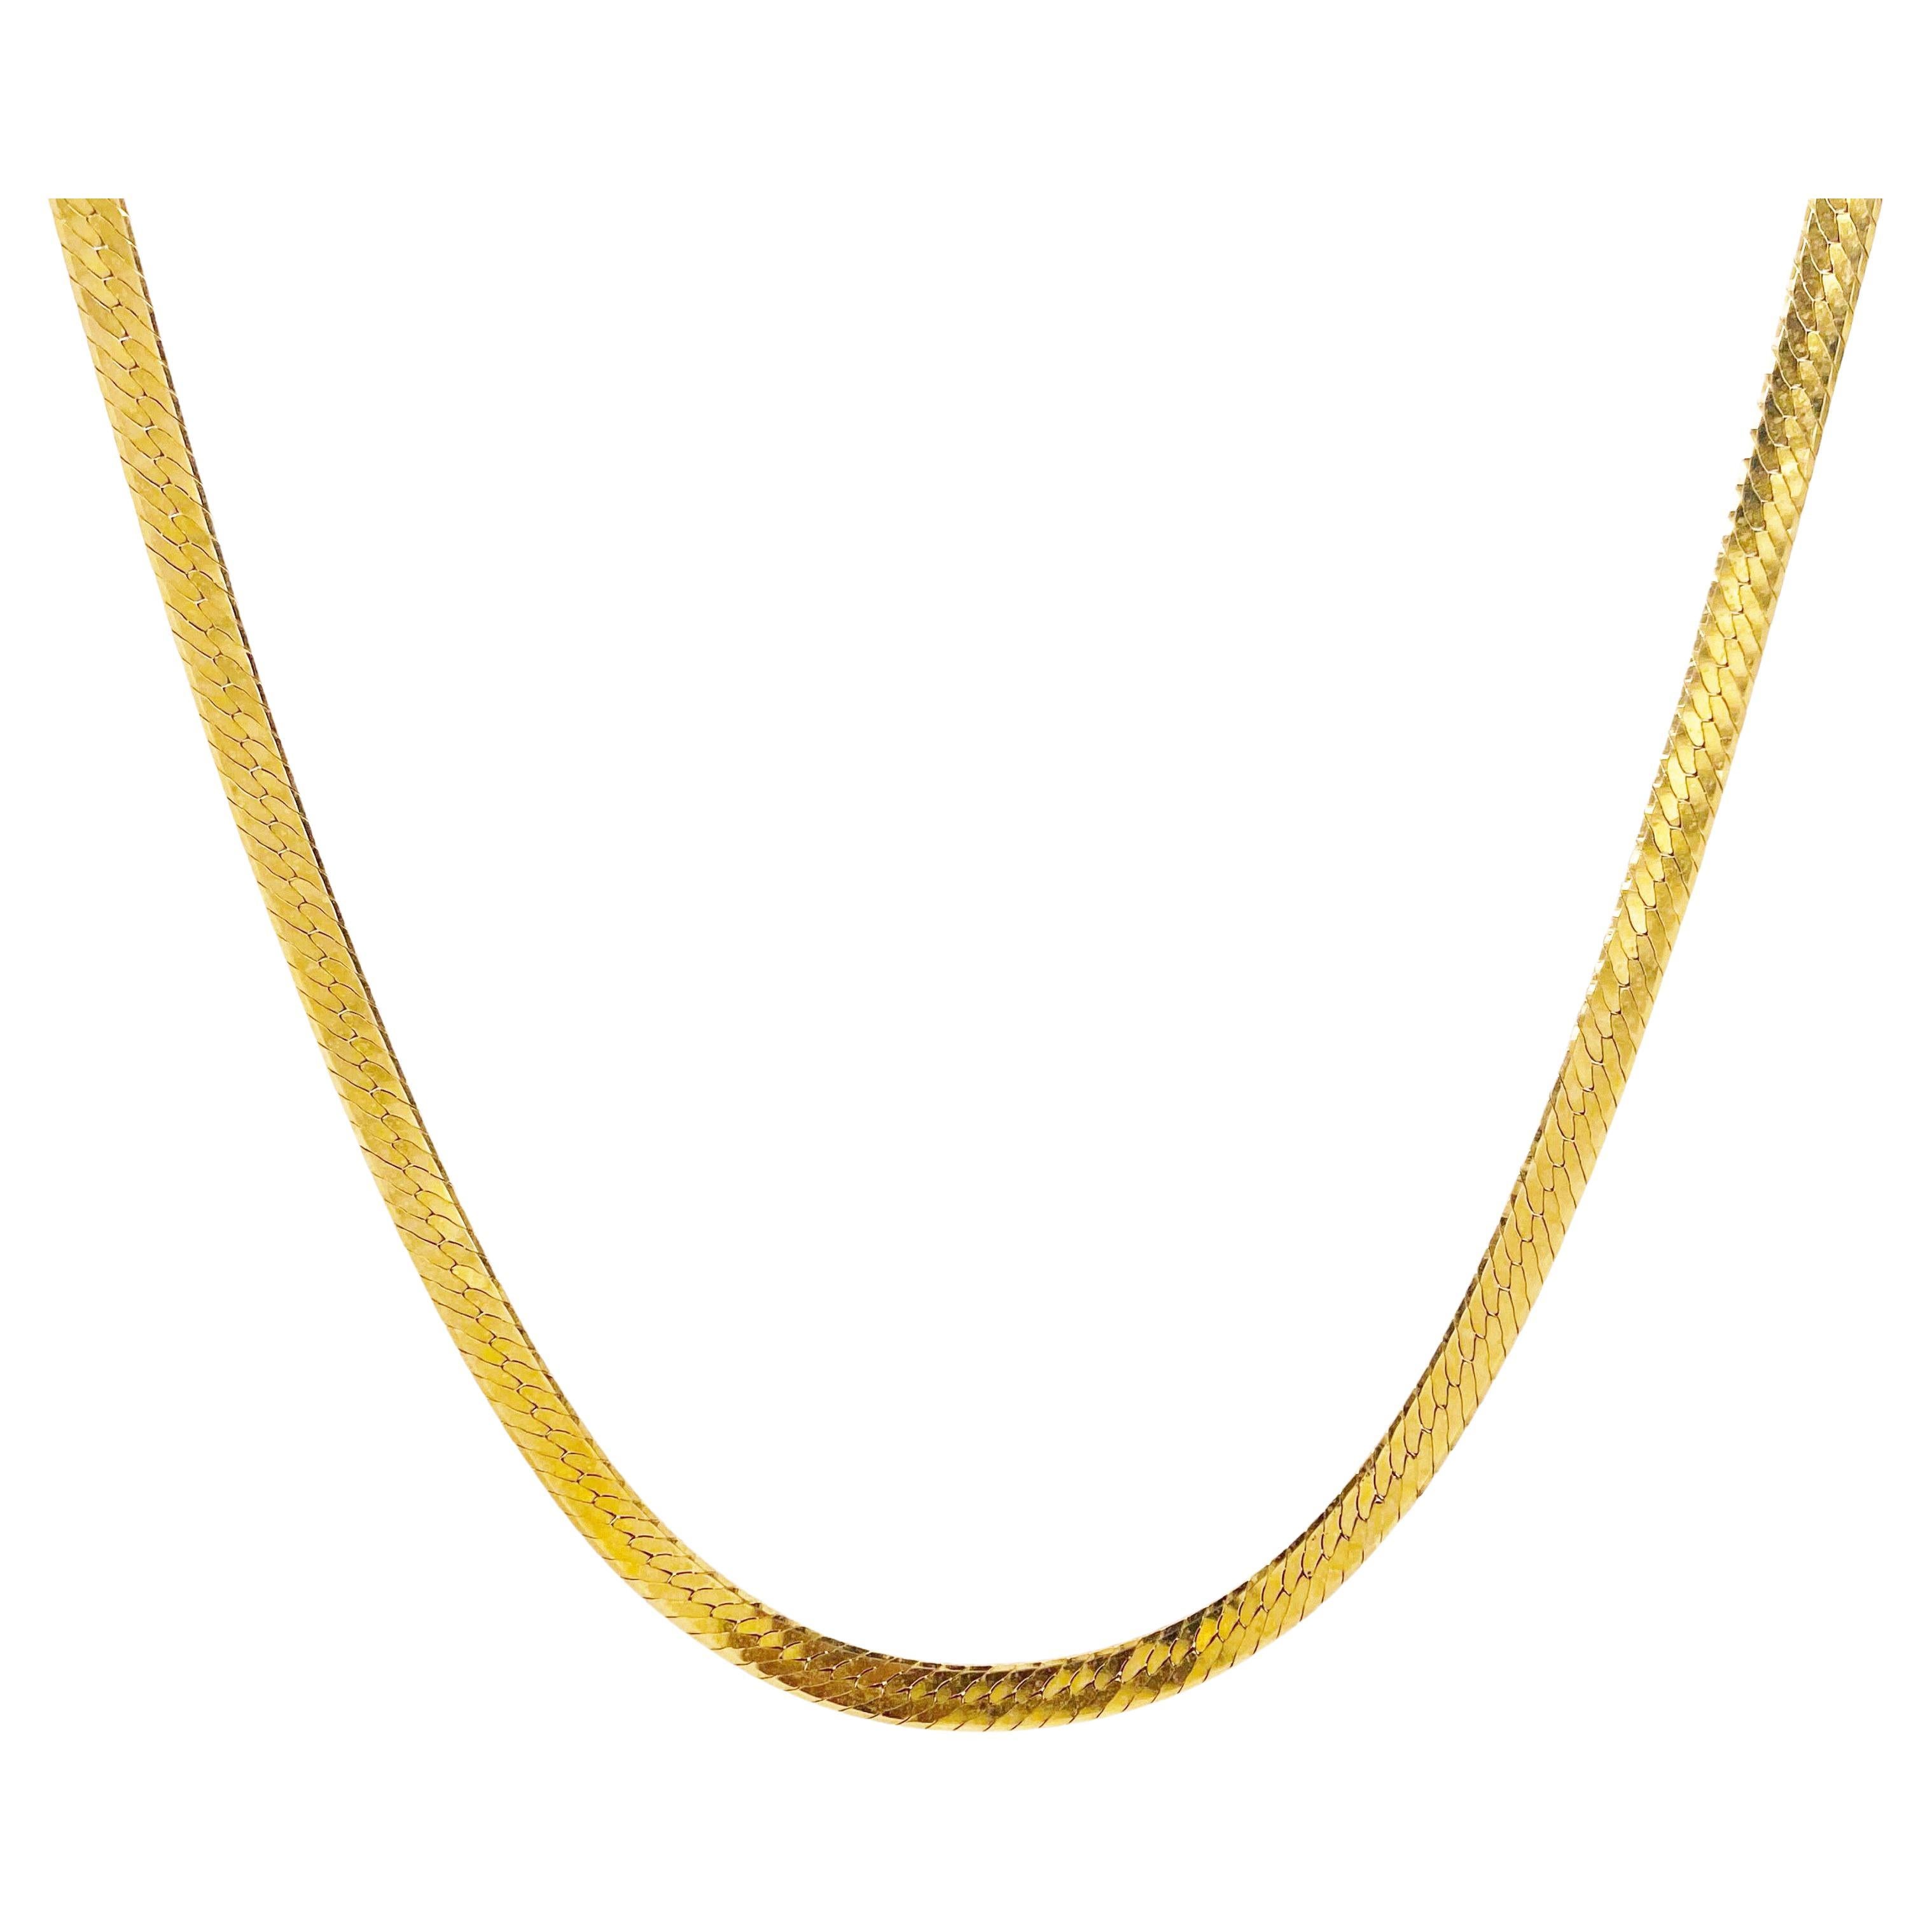 Gold Herringbone Chain, 10K Yellow Gold, Flat Link Wide Chain